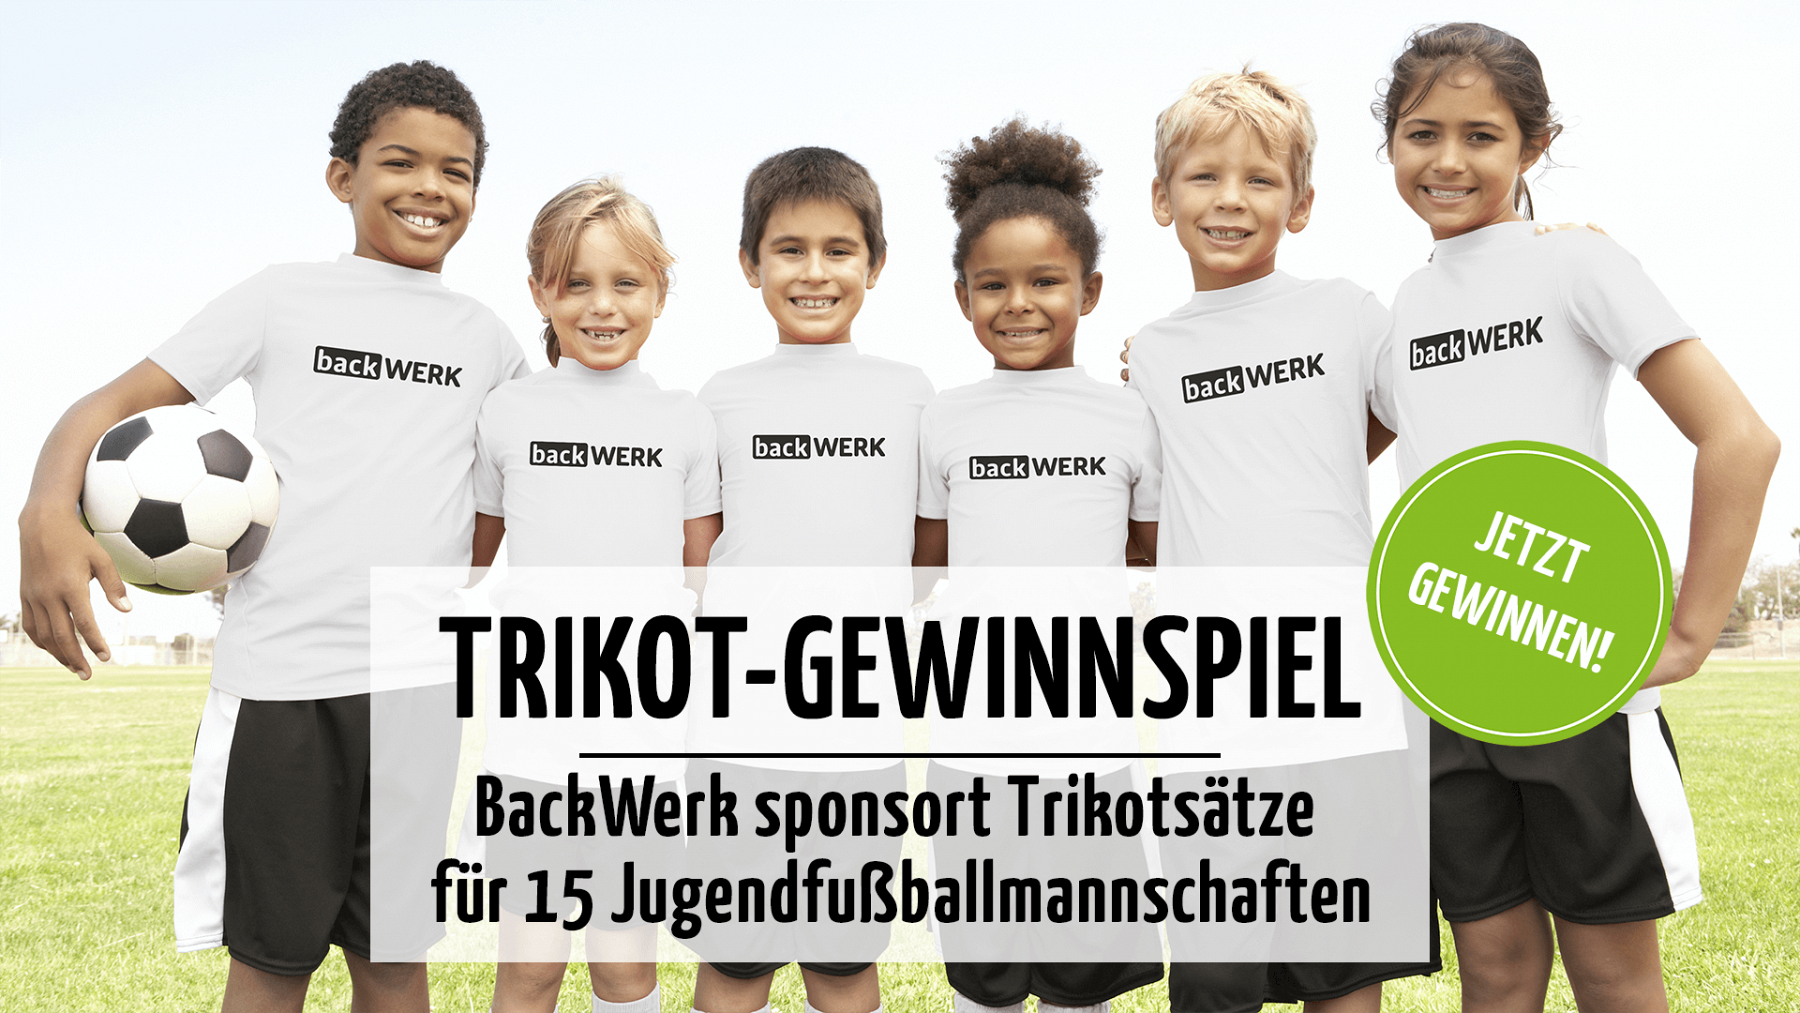 BackWerk - Trikot-Gewinnspiel